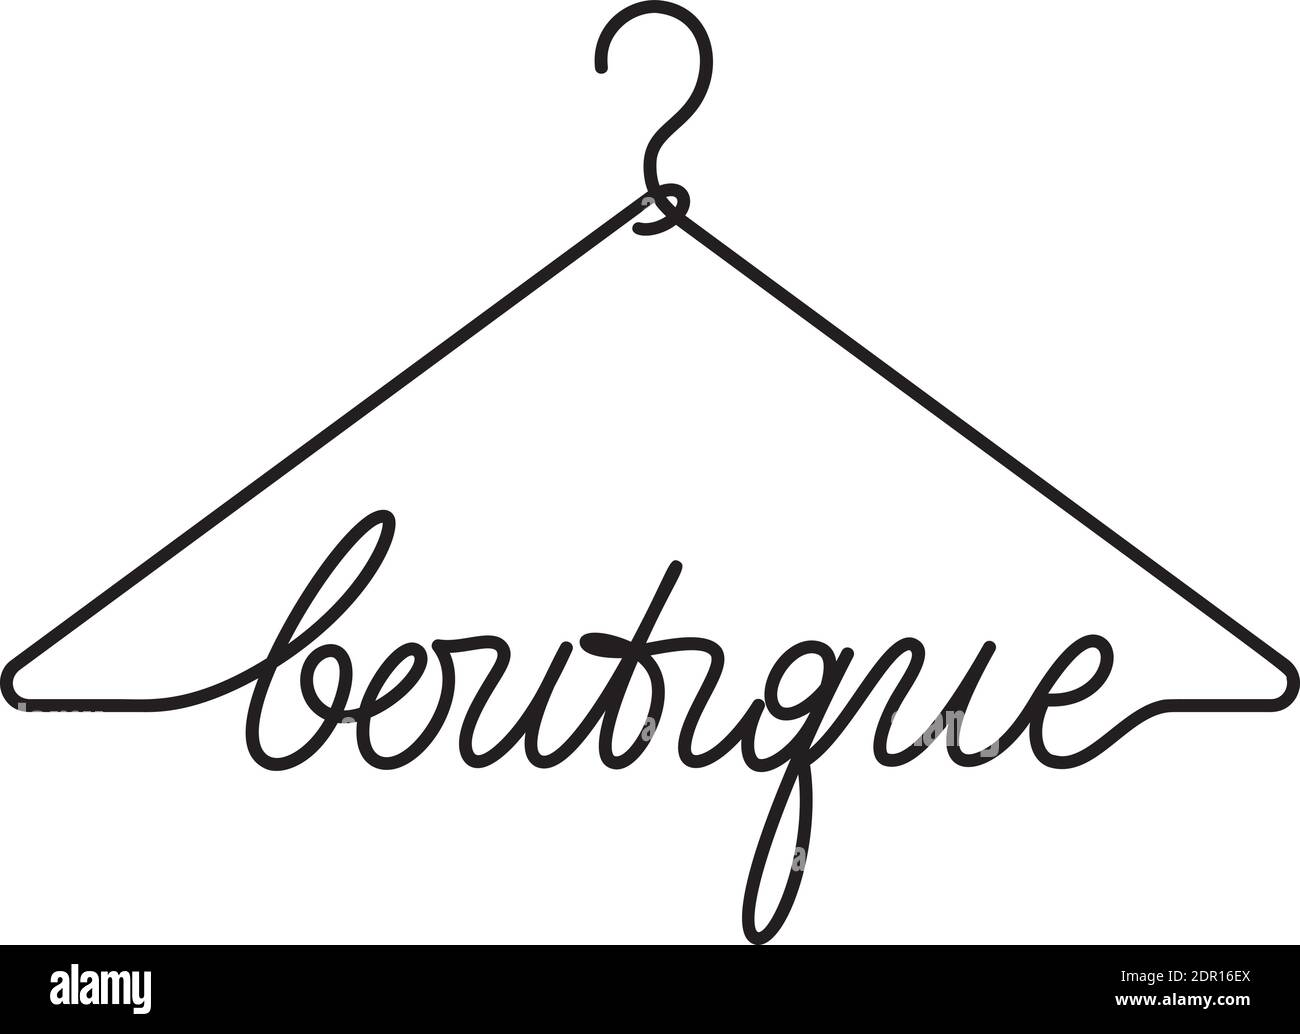 Creative boutique logo design Stock Vector Image & Art - Alamy